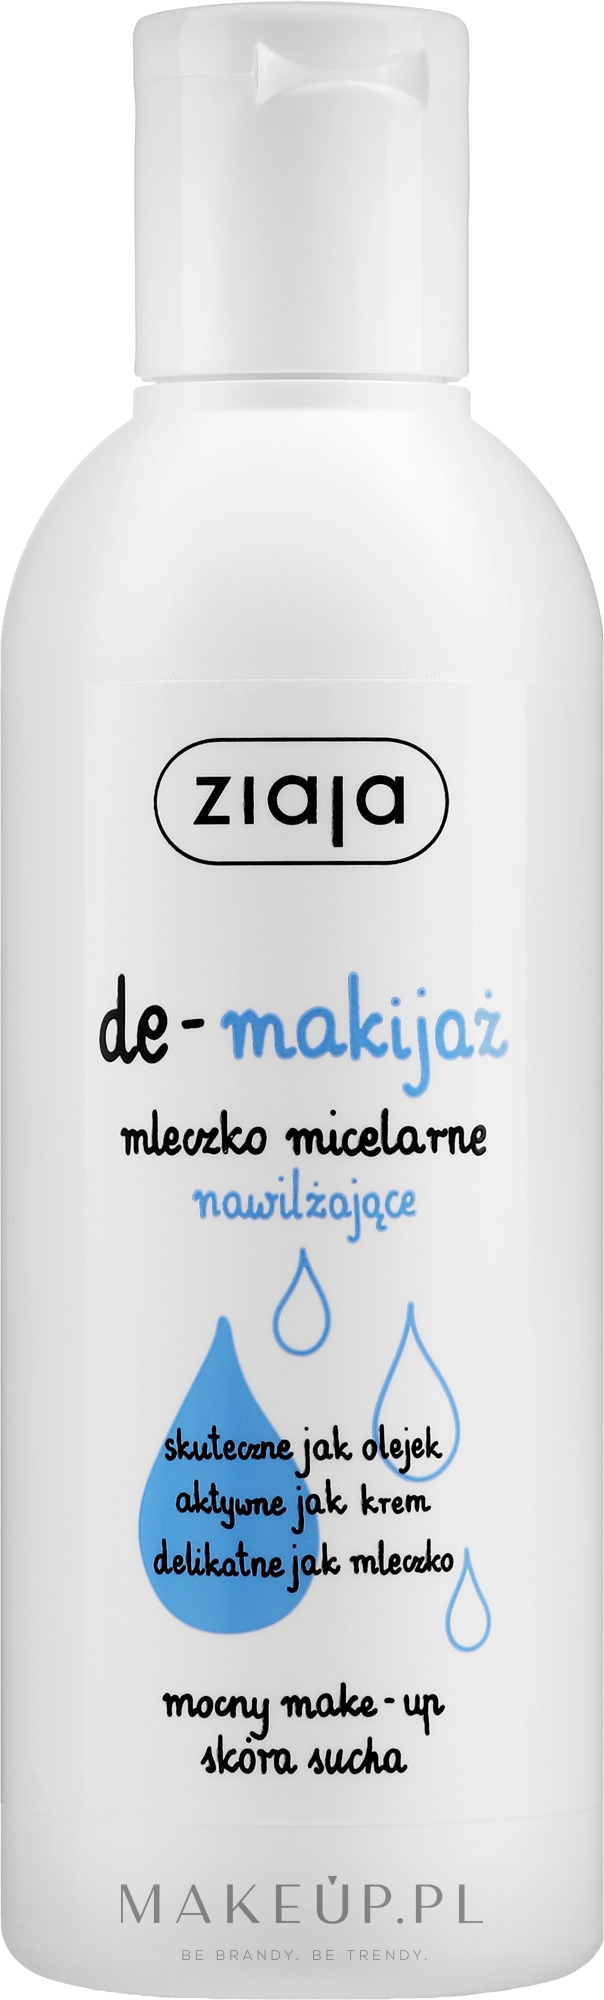 Nawilżające mleczko micelarne do demakijażu - Ziaja De-makijaż — Zdjęcie 200 ml